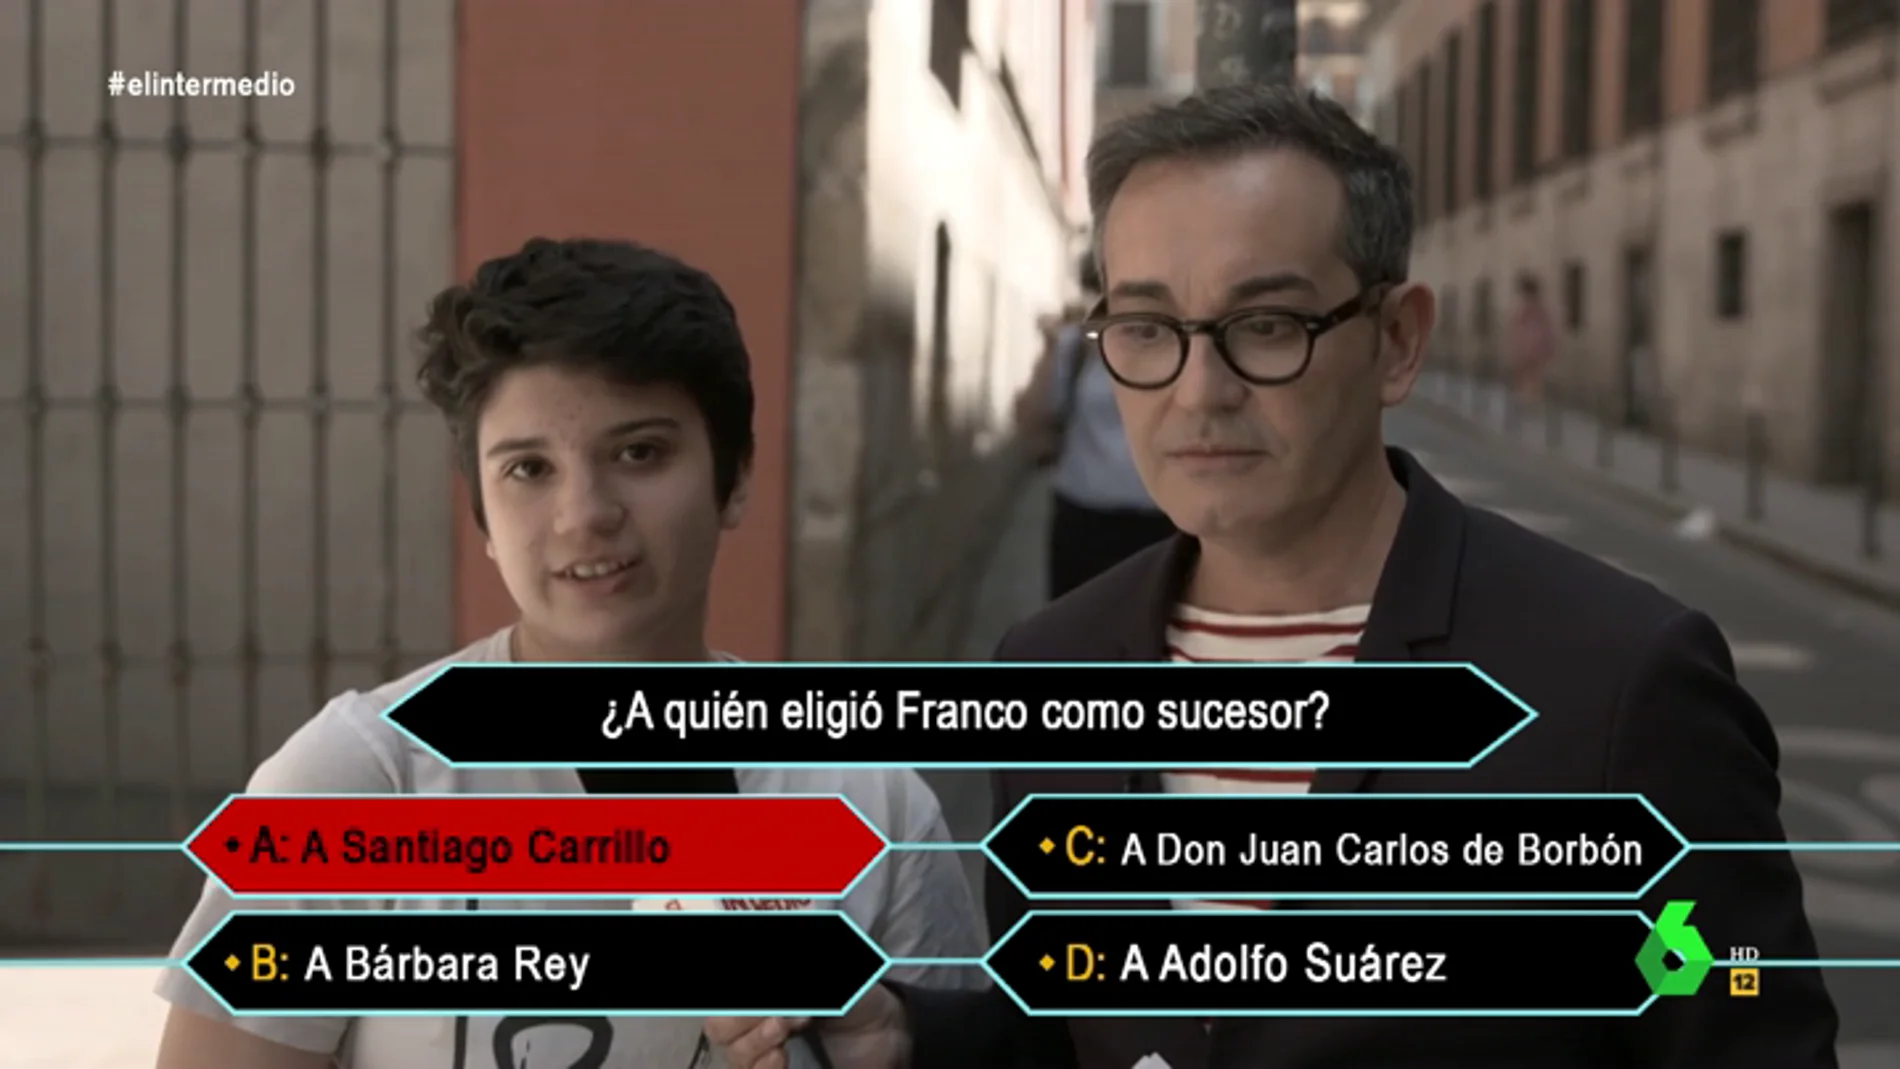 Esto es lo que los jóvenes españoles saben de Franco: "Eligió a Santiago Carrillo como sucesor y le asesinaron en una cafetería"